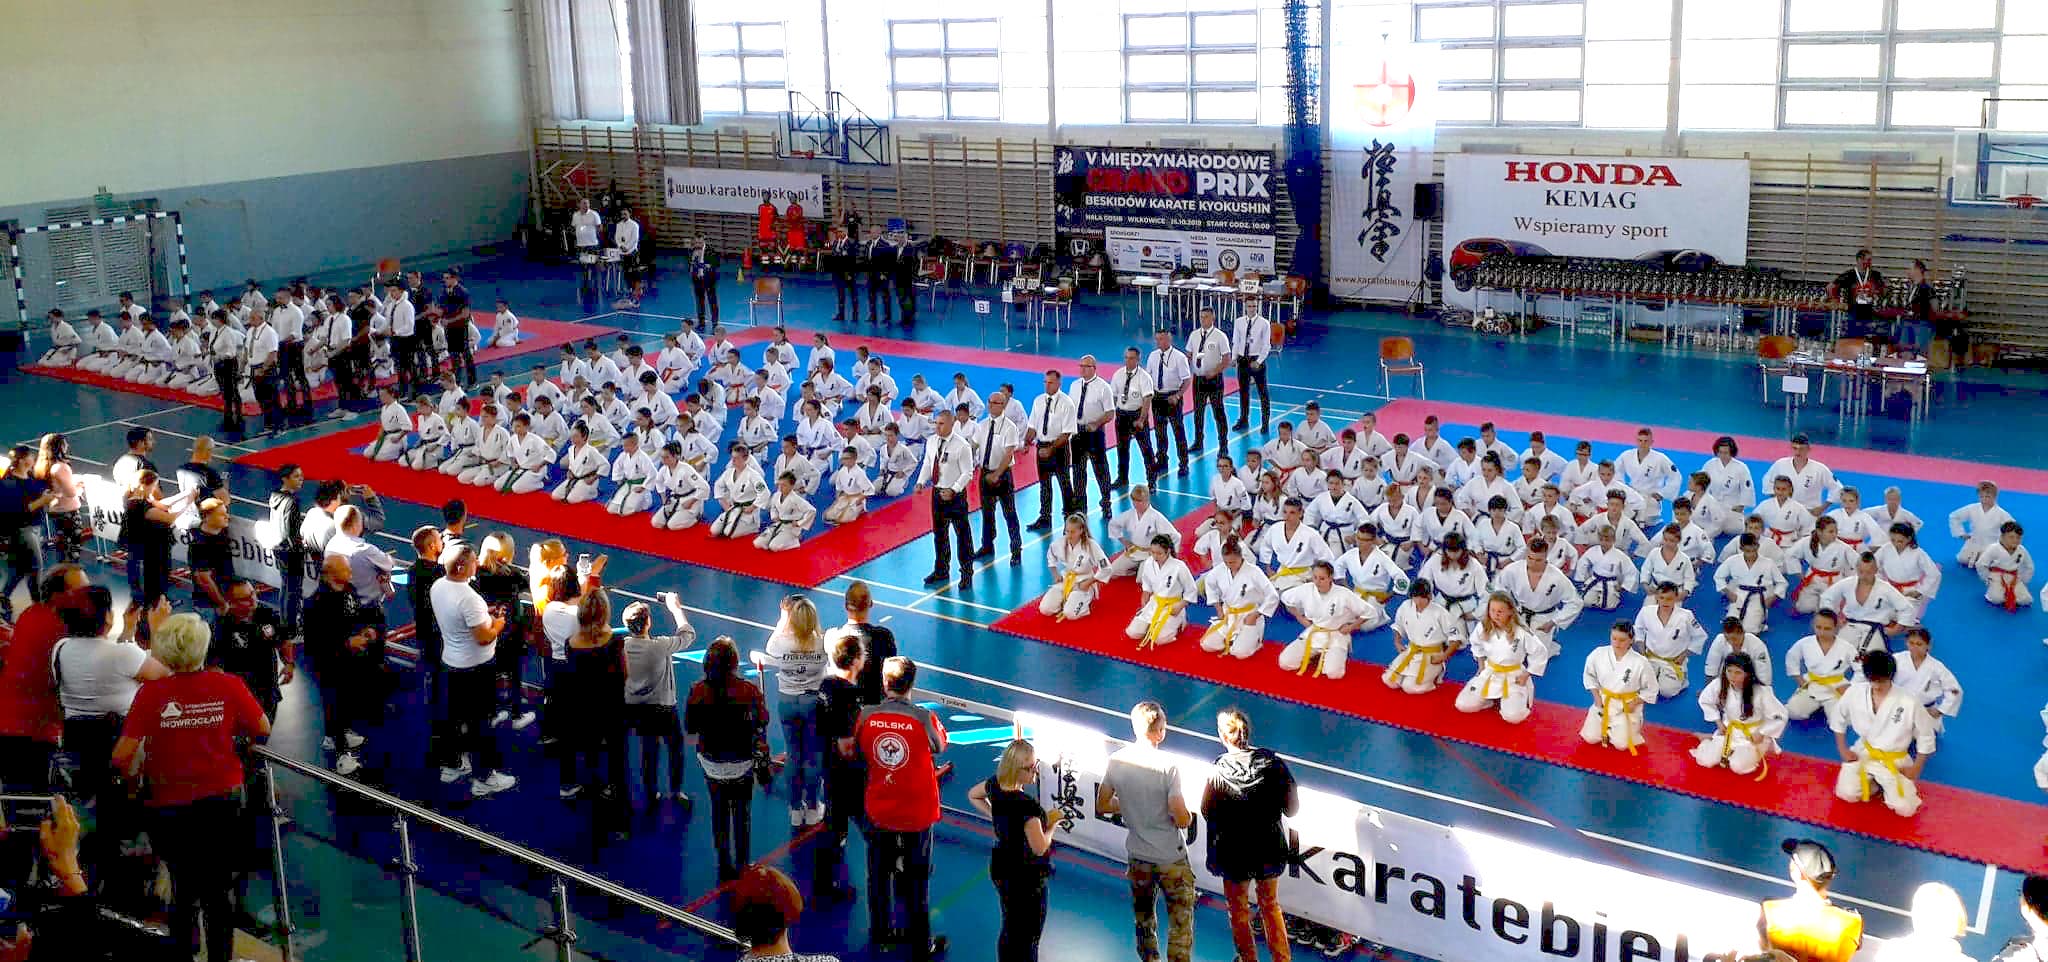 V Międzynarodowym Grand Prix Beskidów Karate Kyokushin, Wilkowice 2019